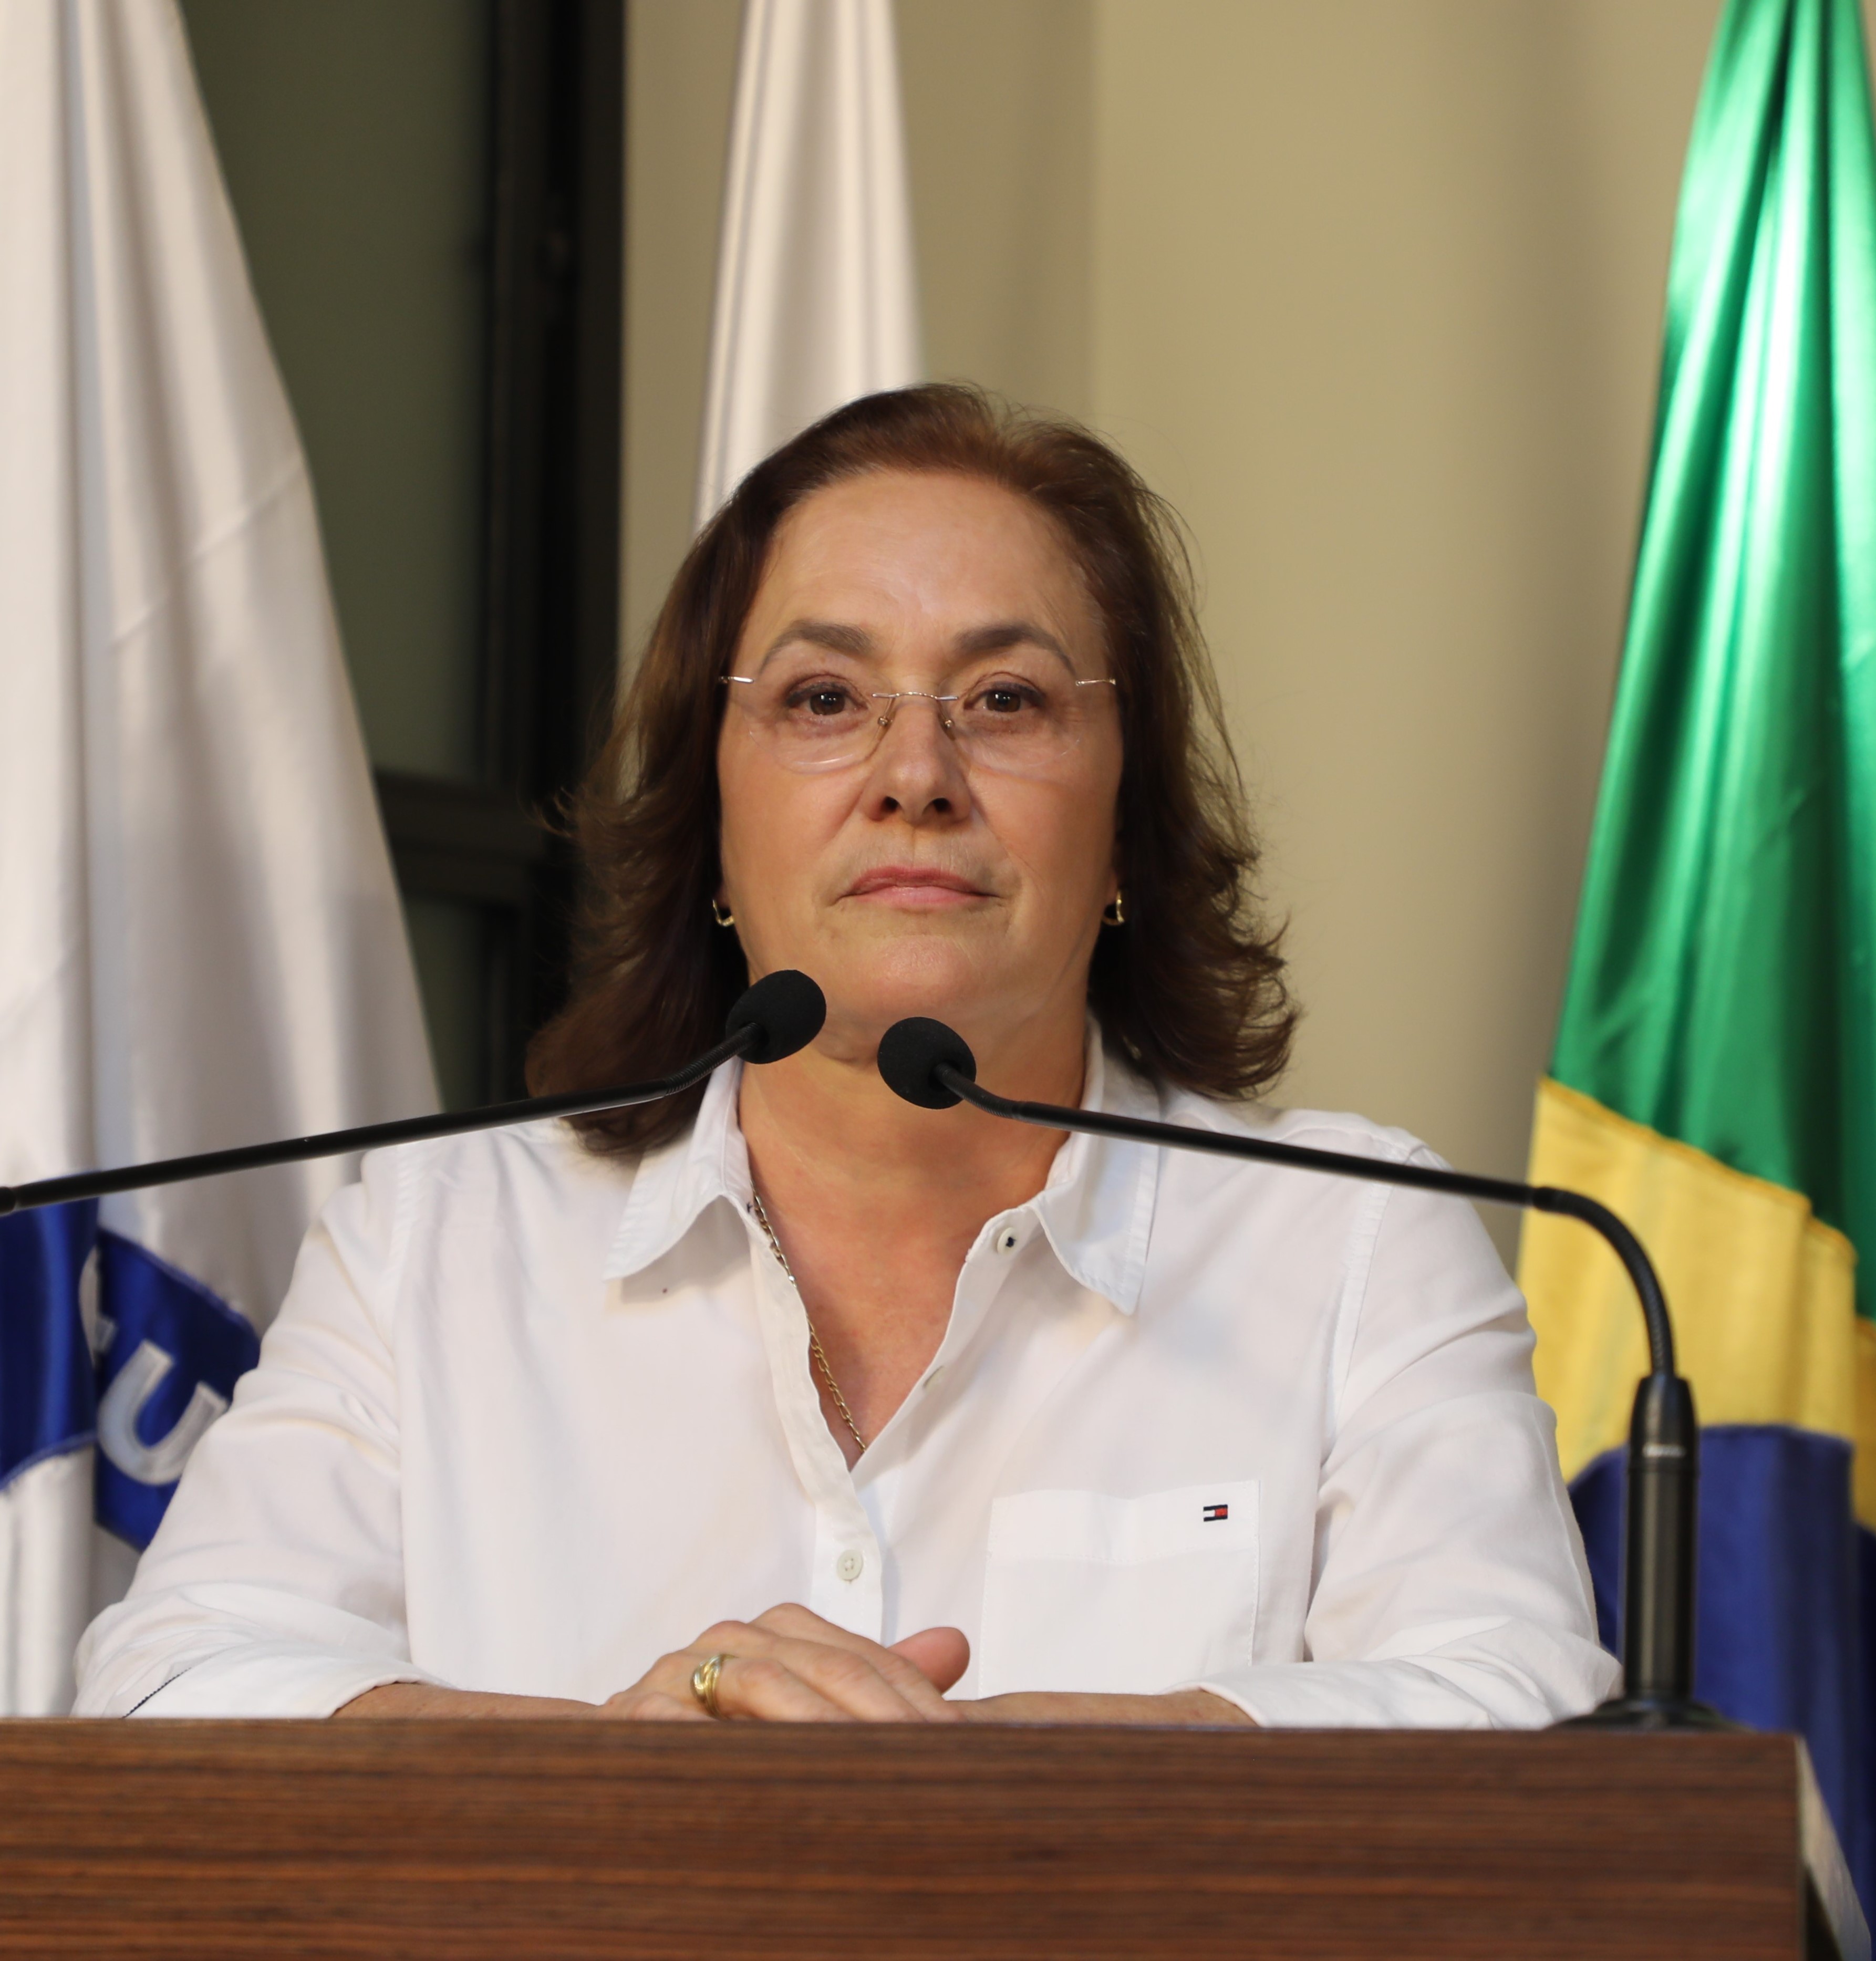 Vereadora Vanja Honorina (UNIÃO) Presidente da Comissão de Abastecimento, Indústria, Comércio e Defesa do Consumidor